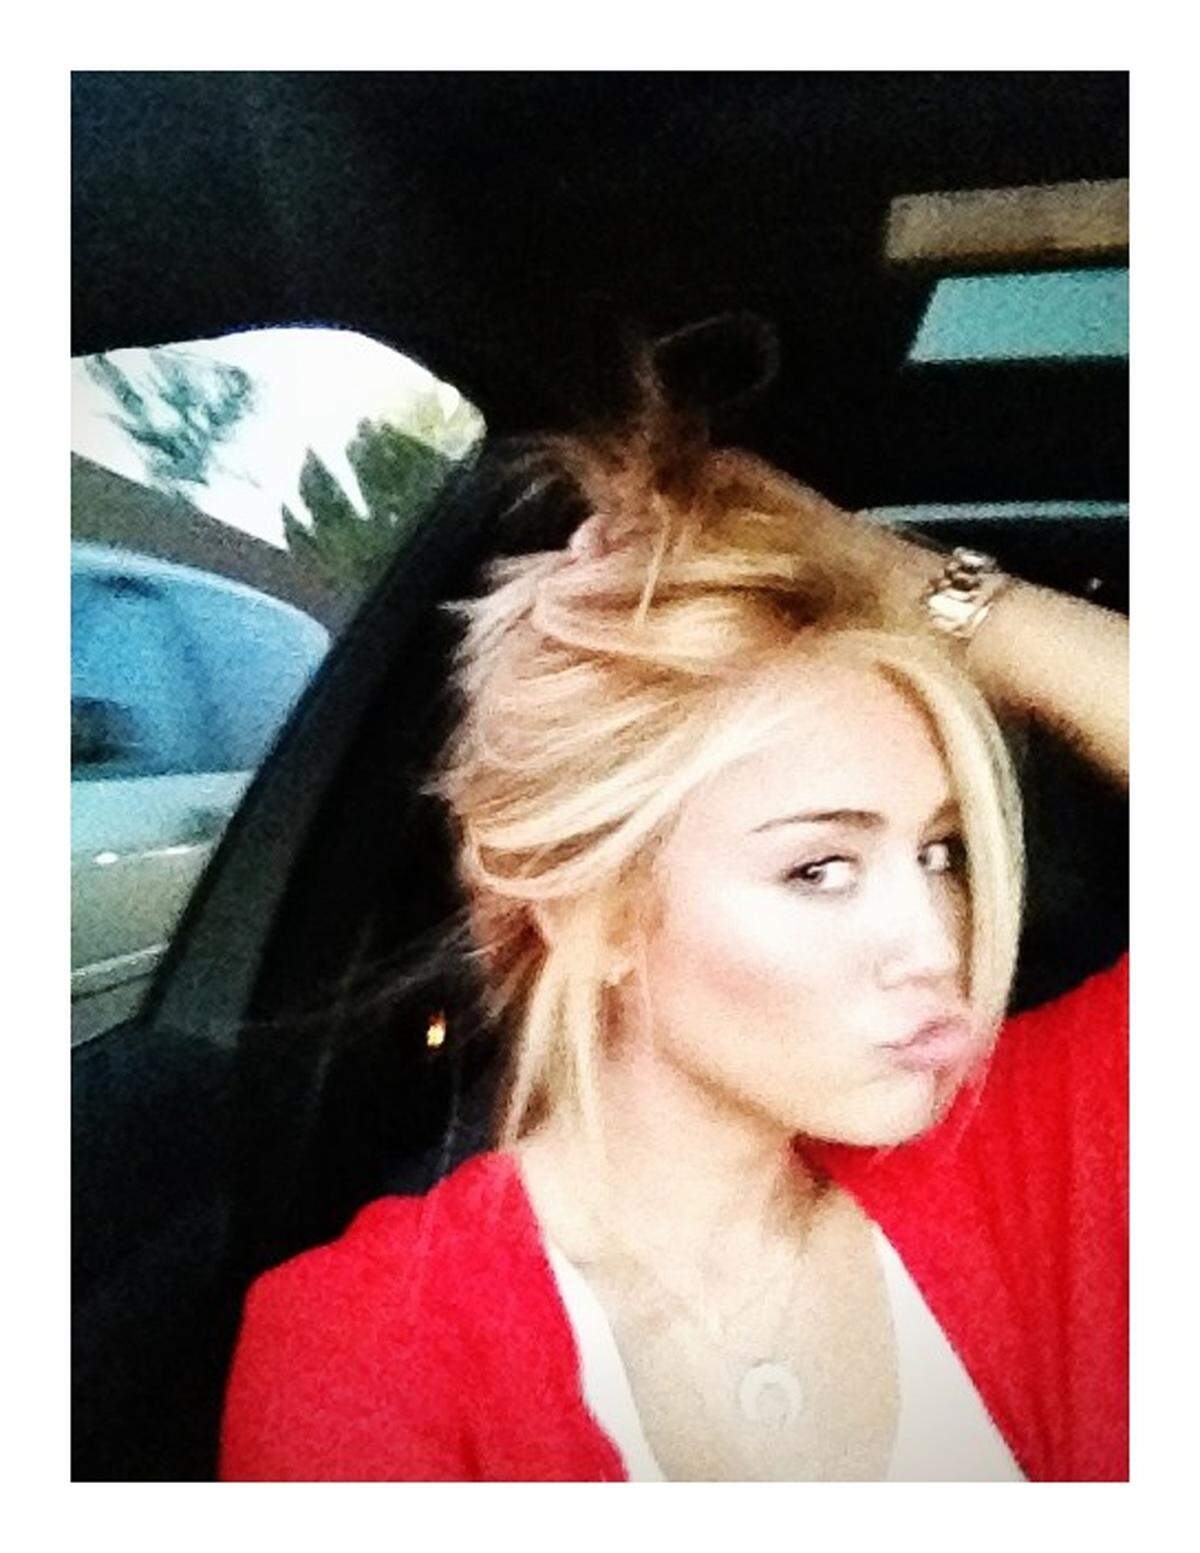 Miley Cyrus im Medienrummel: Verlobung, Kinderwunsch und nun eine neue Haarfarbe beschäftigen die Tratsch- und Klatschpresse.